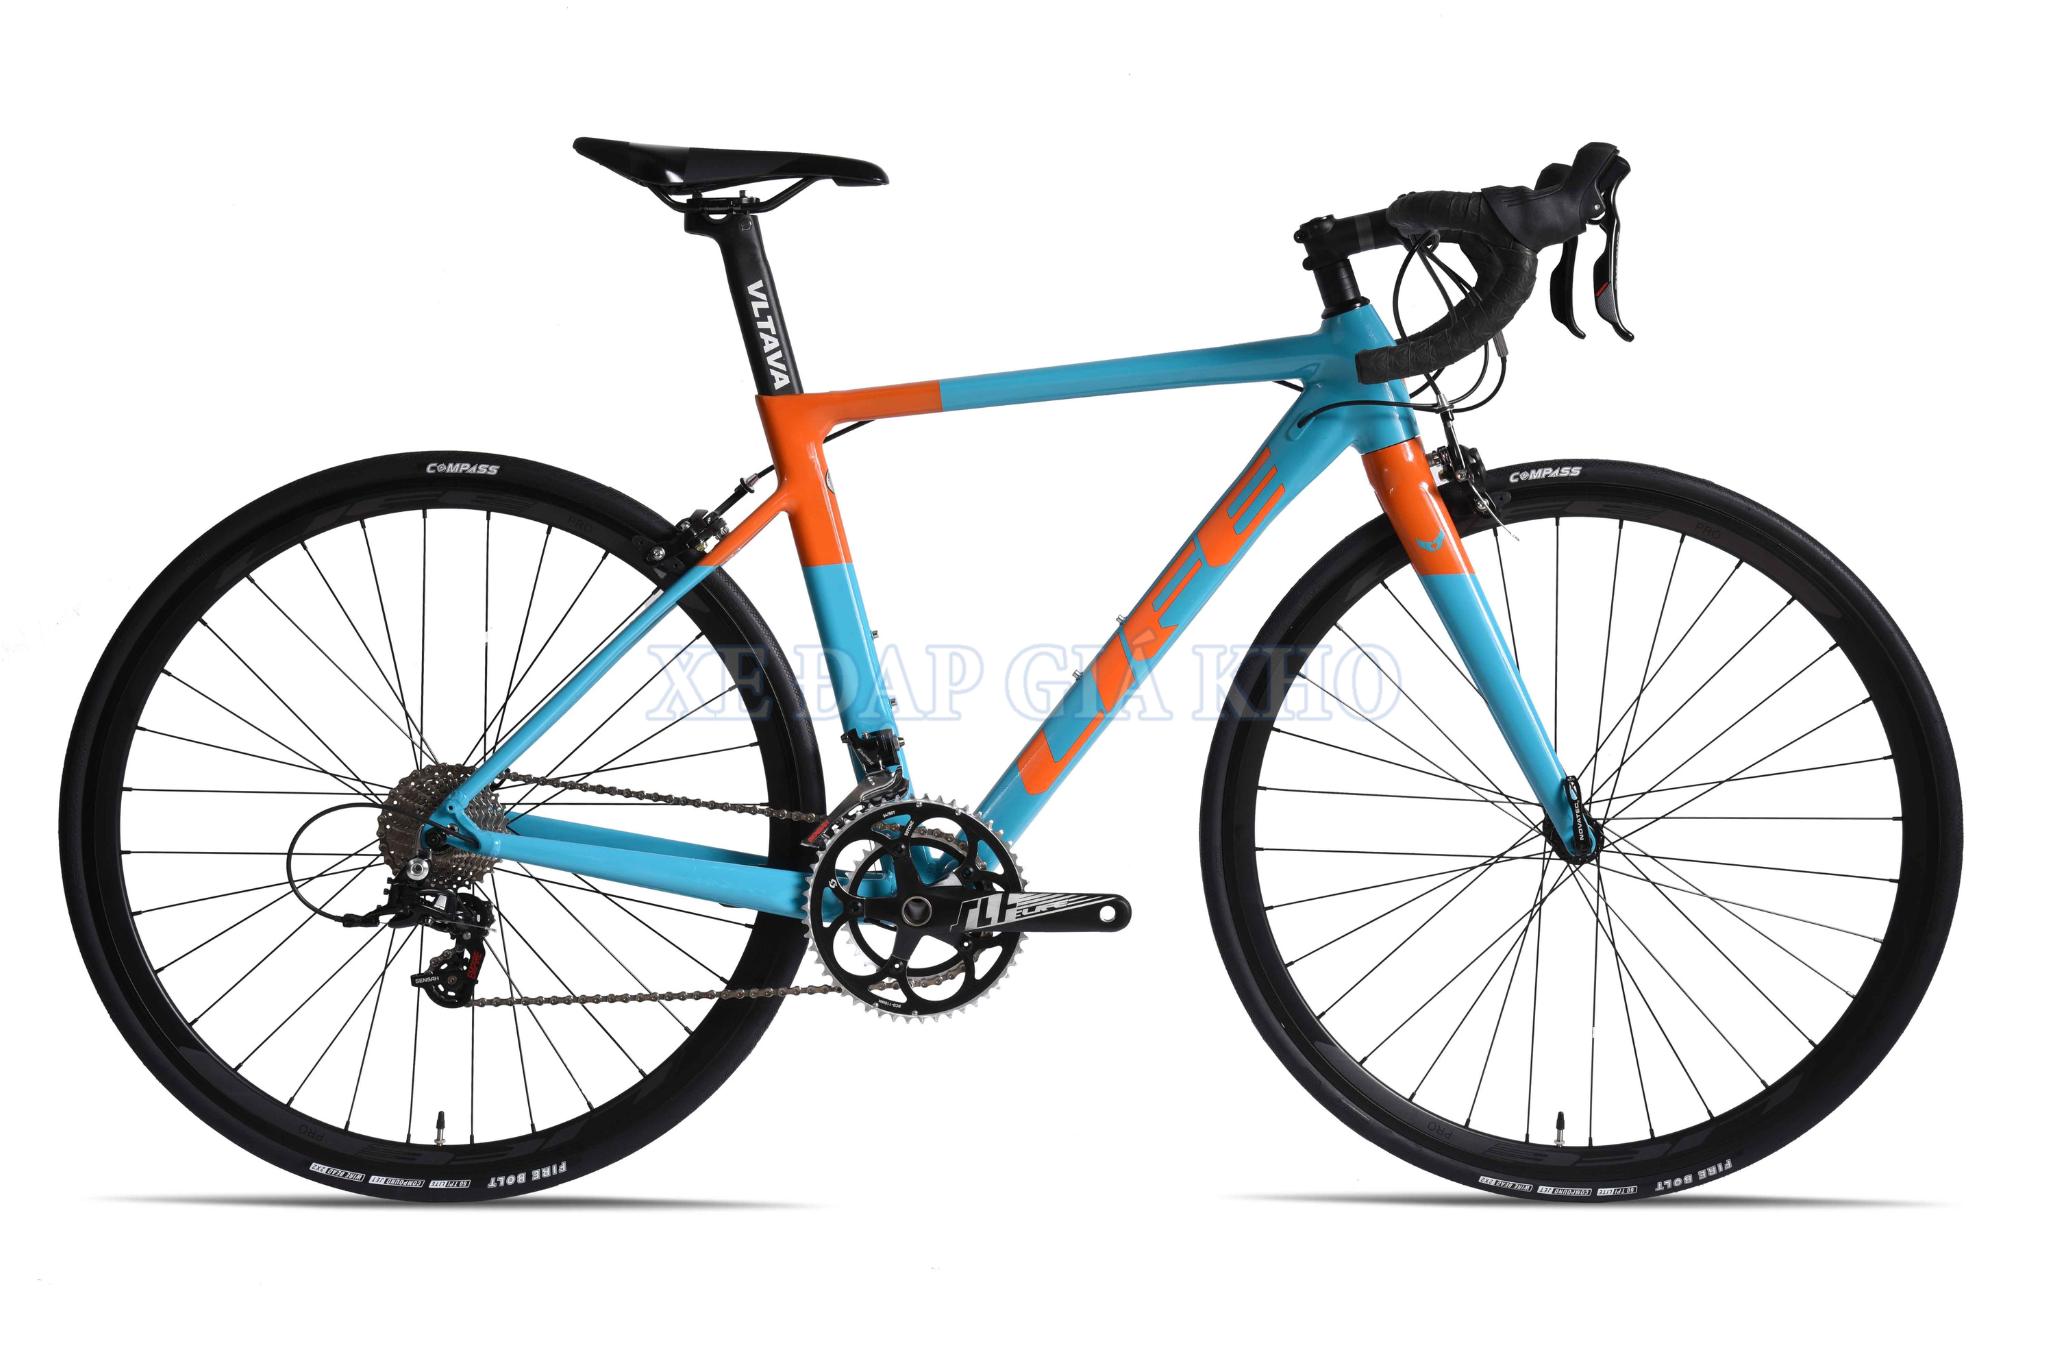 Ngoại hình bắt mắt với 2 gam màu nổi bật của Xe đạp đua Life Light 700c 